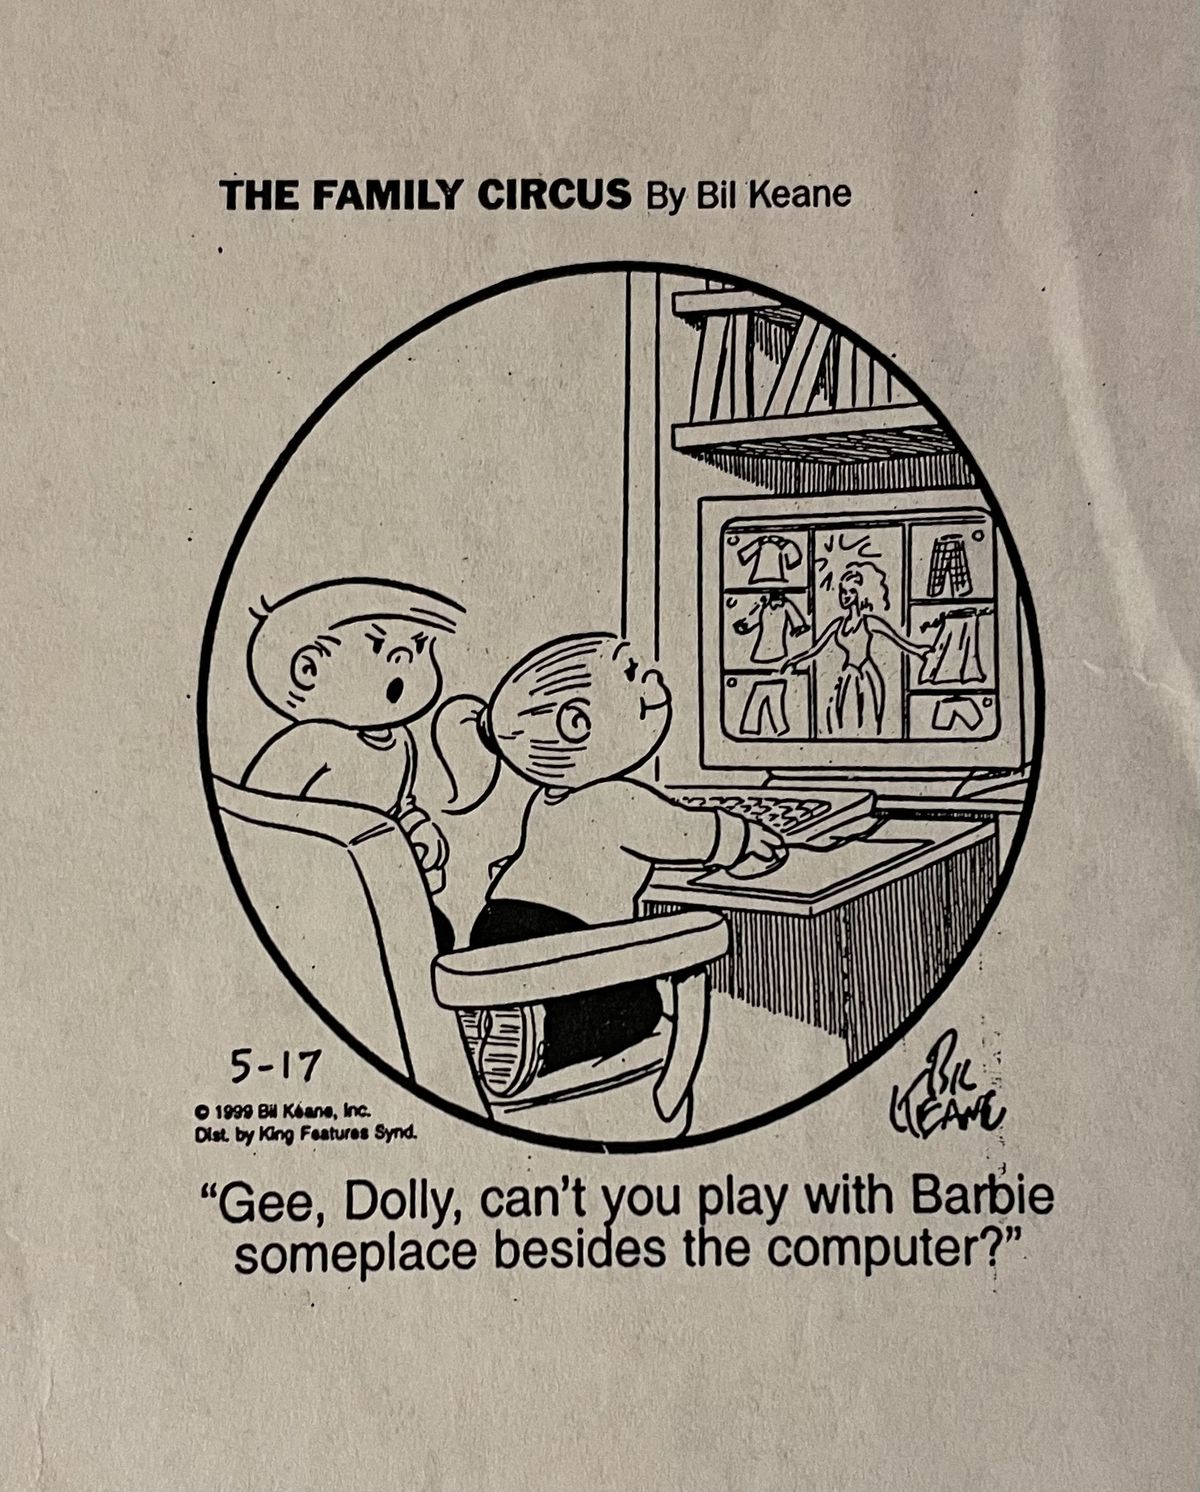 The Family Circus adlı çizgi romandan bir kesit. Küçük bir kız oyunu masaüstü bilgisayarda oynuyor ve kızgın görünüşlü bir genç oğlan soruyor, "Vay canına, Dolly, bilgisayarın dışında bir yerde Barbie ile oynayamaz mısın?"